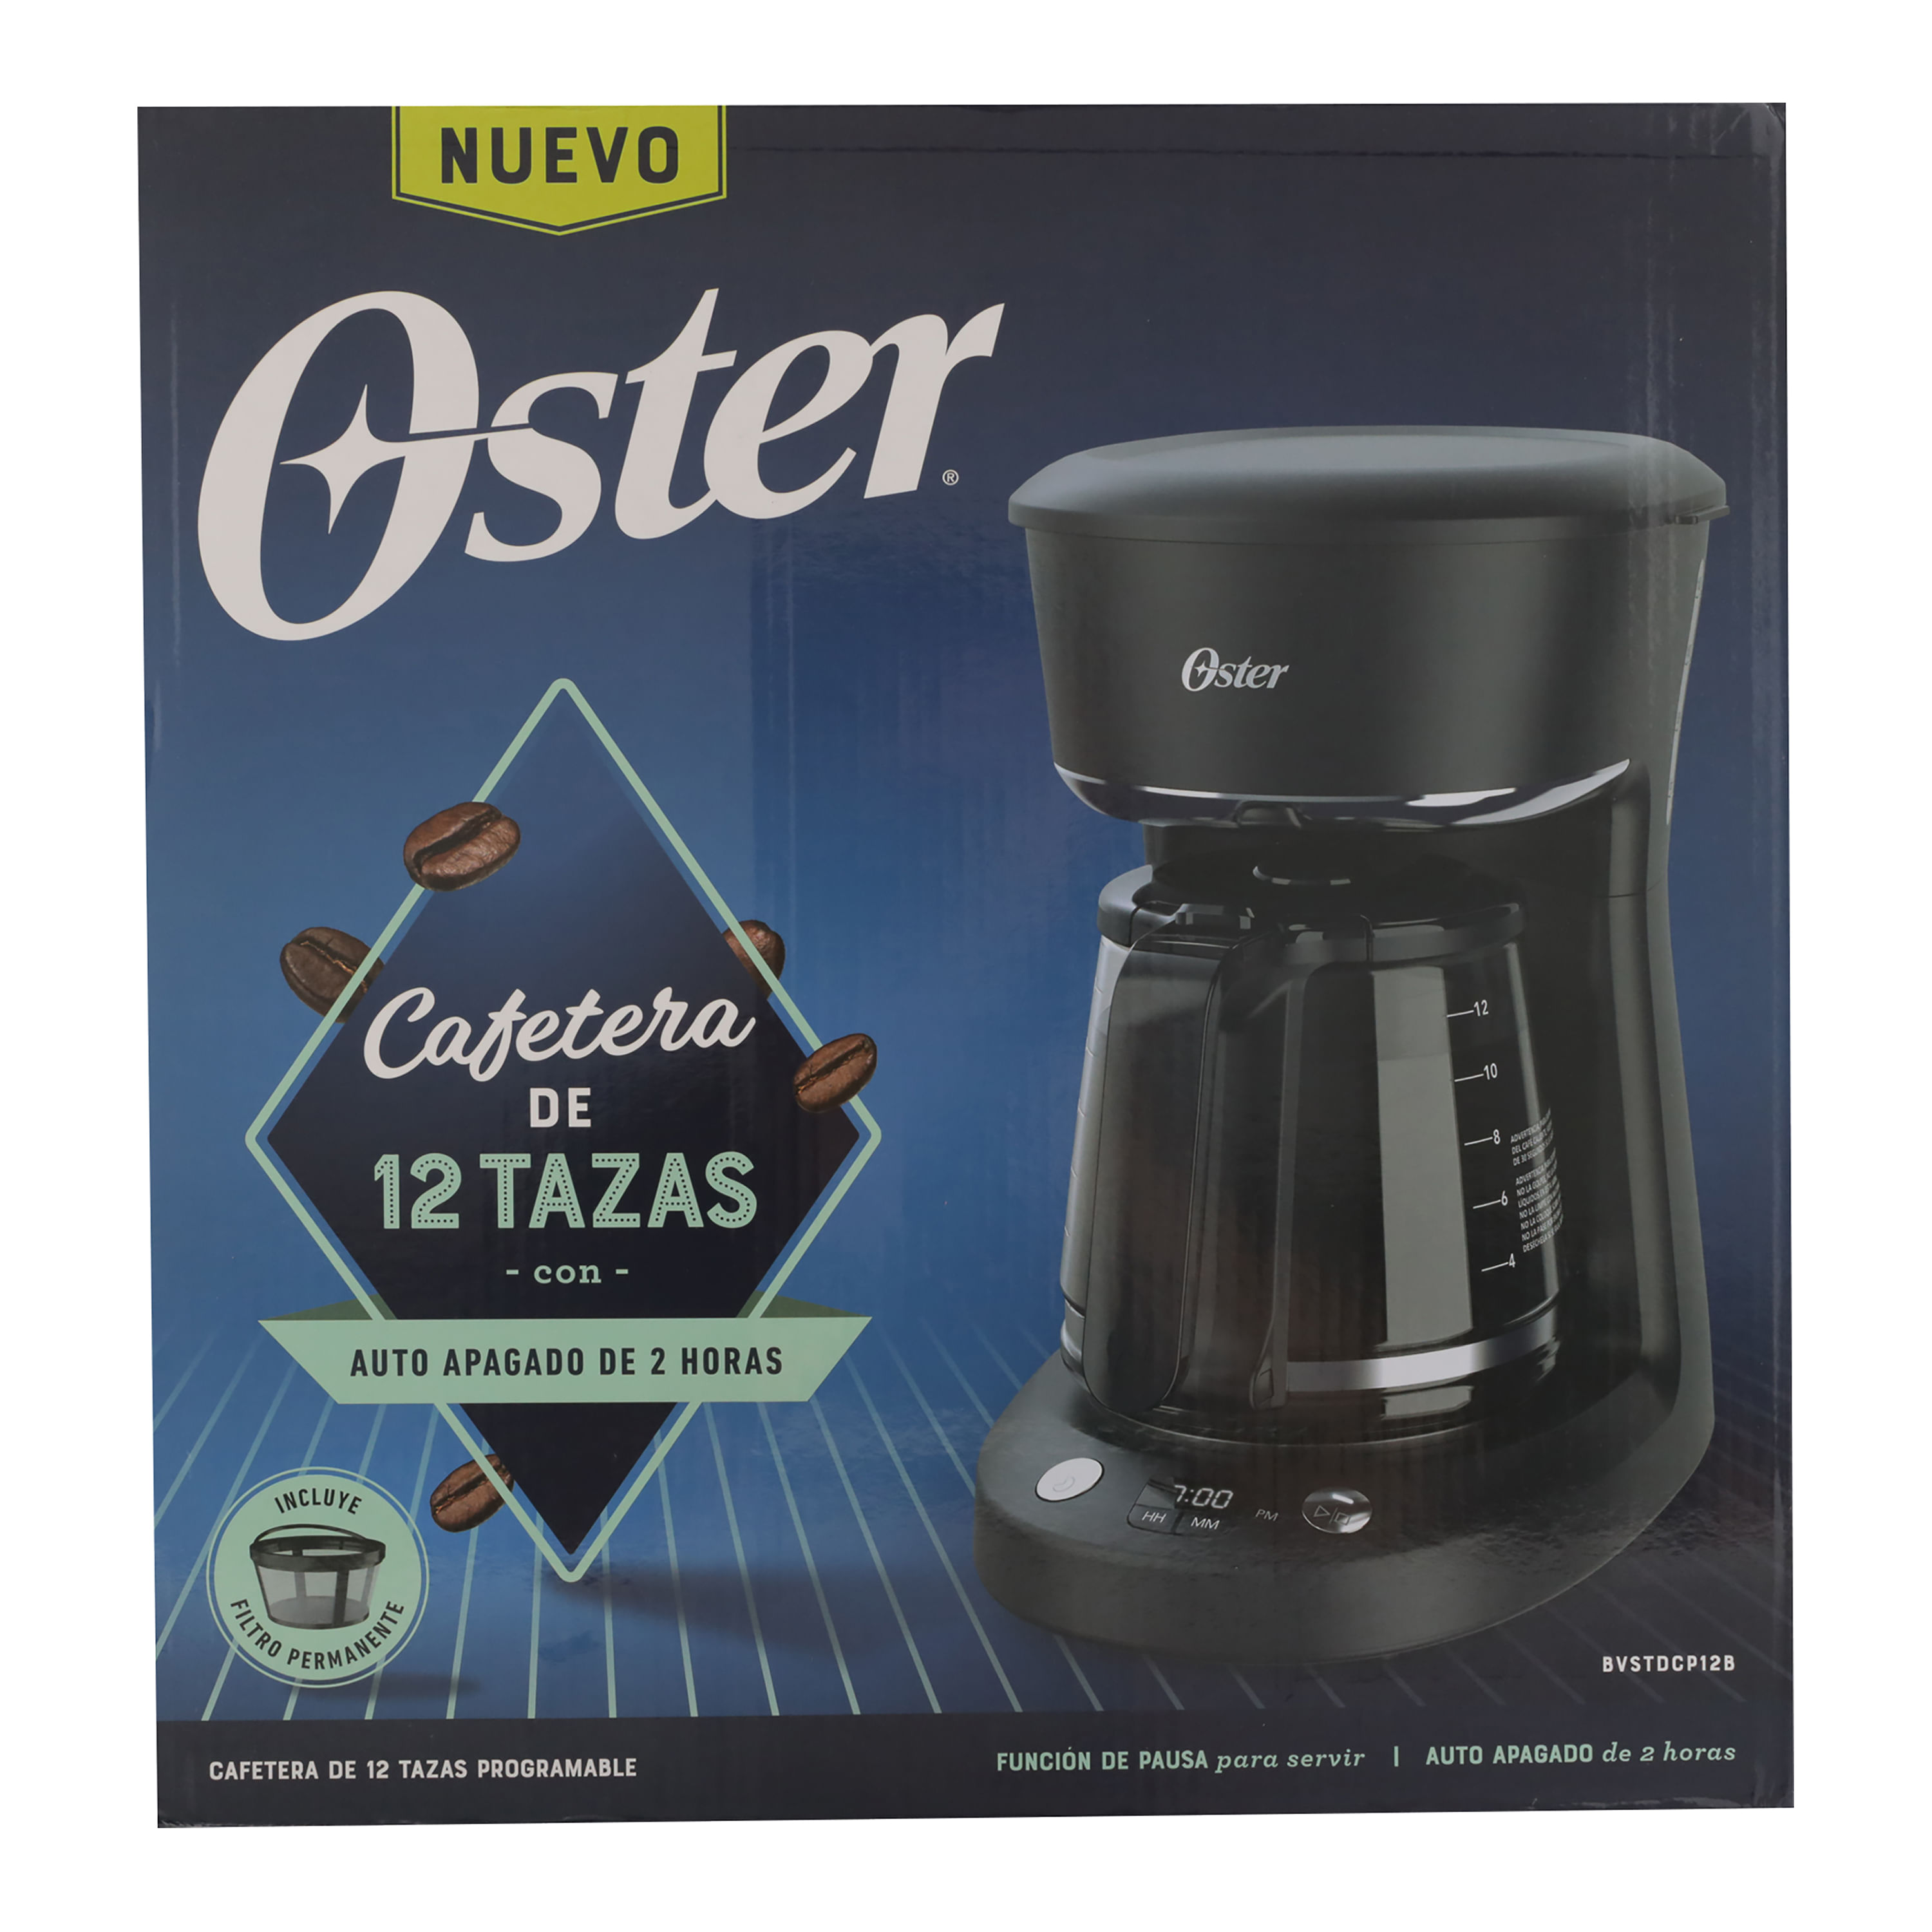 Cafetera programable Oster® de 12 tazas con auto apagado